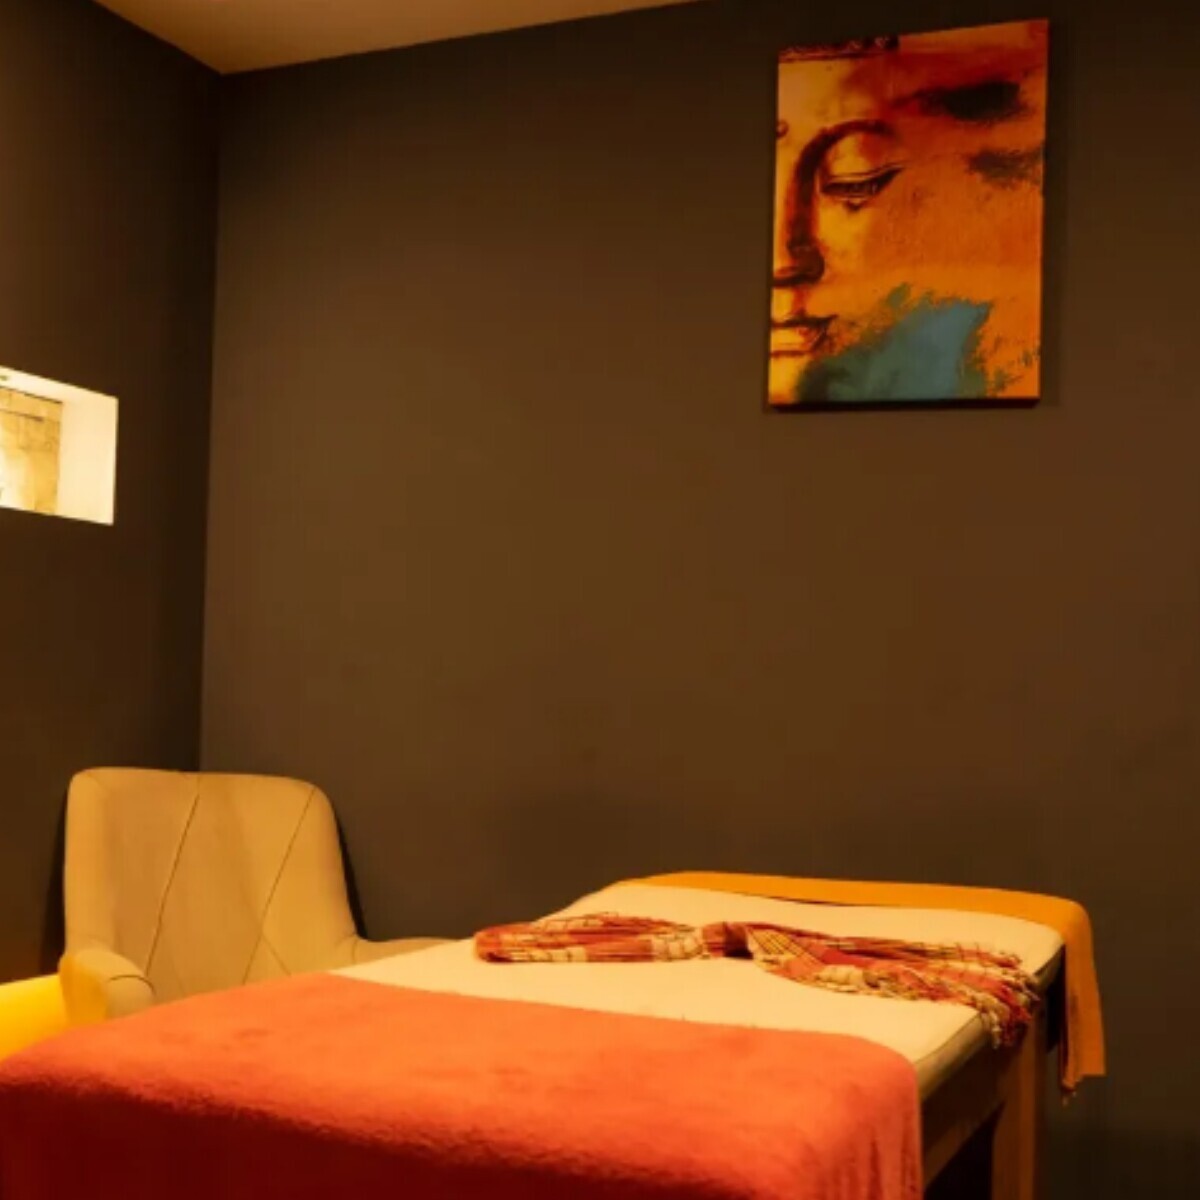 Mox Hotel Wellness & Spa Sapanca'da Tek veya Çift Kişilik Konaklama Seçenekleri